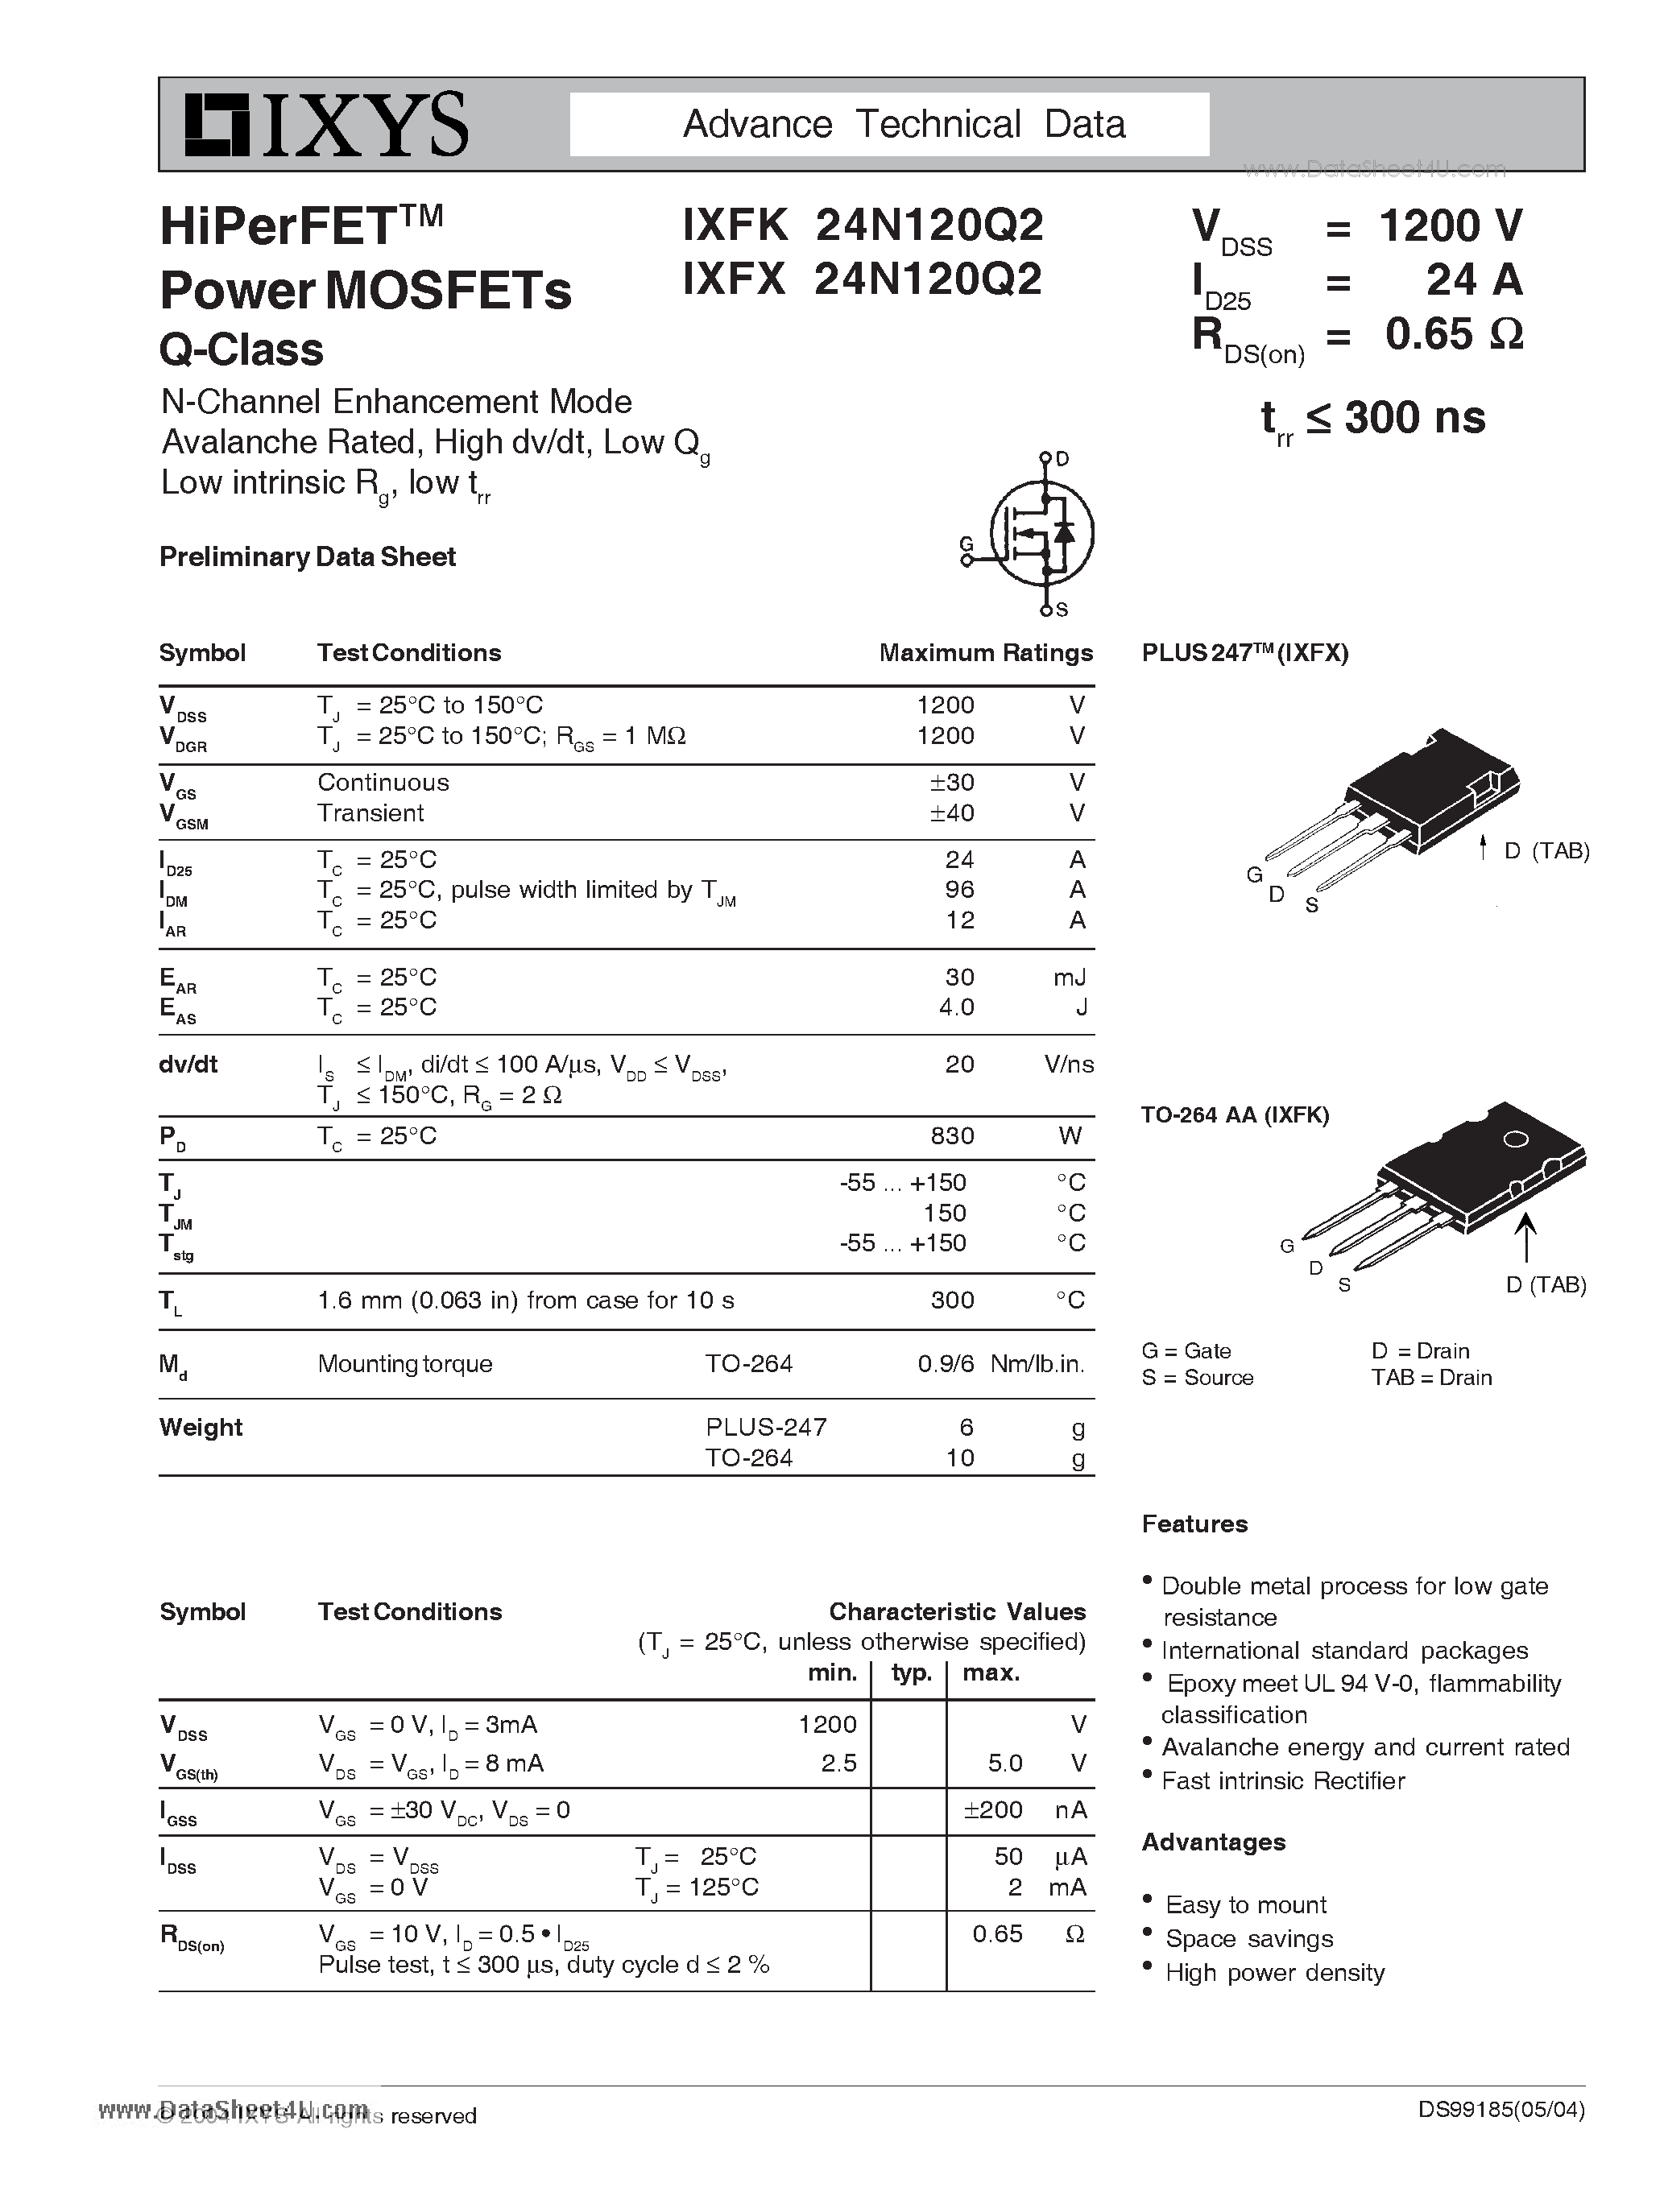 Даташит IXFK24N120Q2 - HiPerFET Power MOSFETs Q-Class страница 1